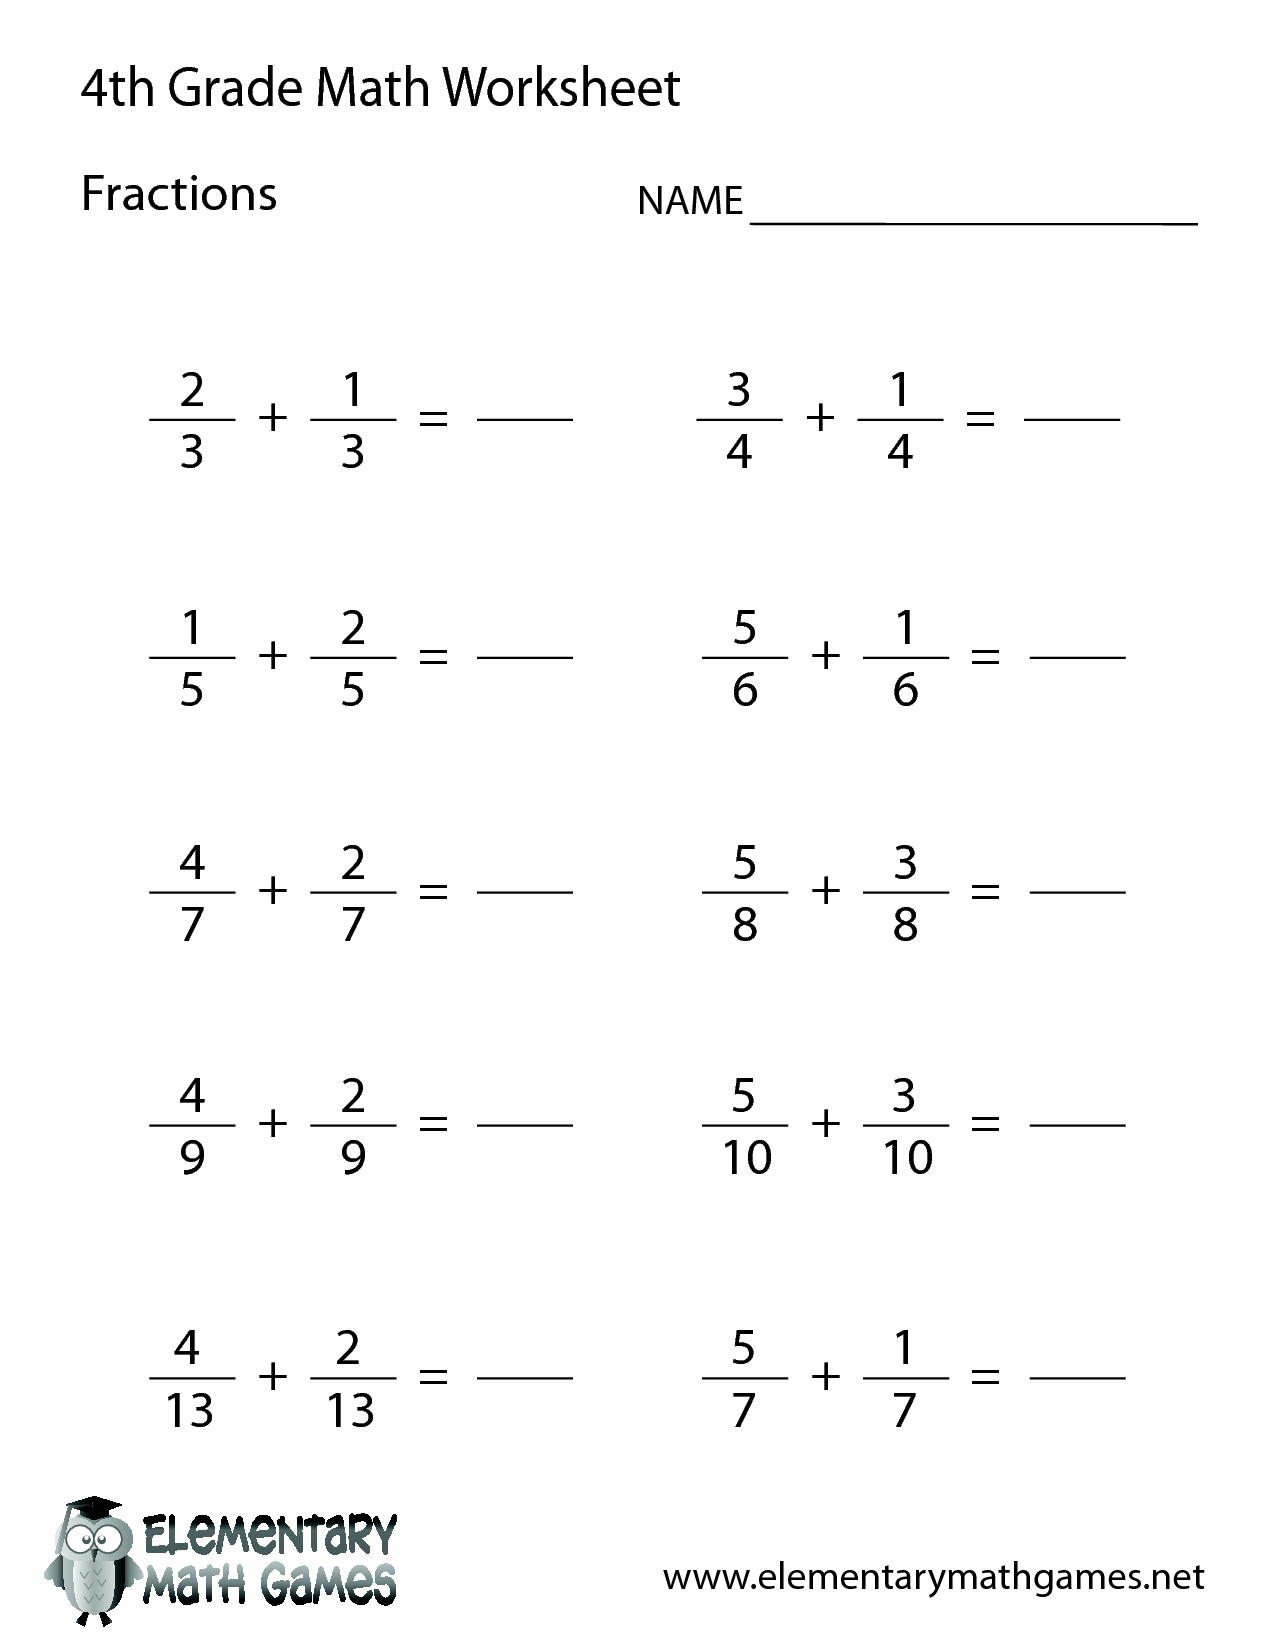 4th Grade Math Worksheets Image